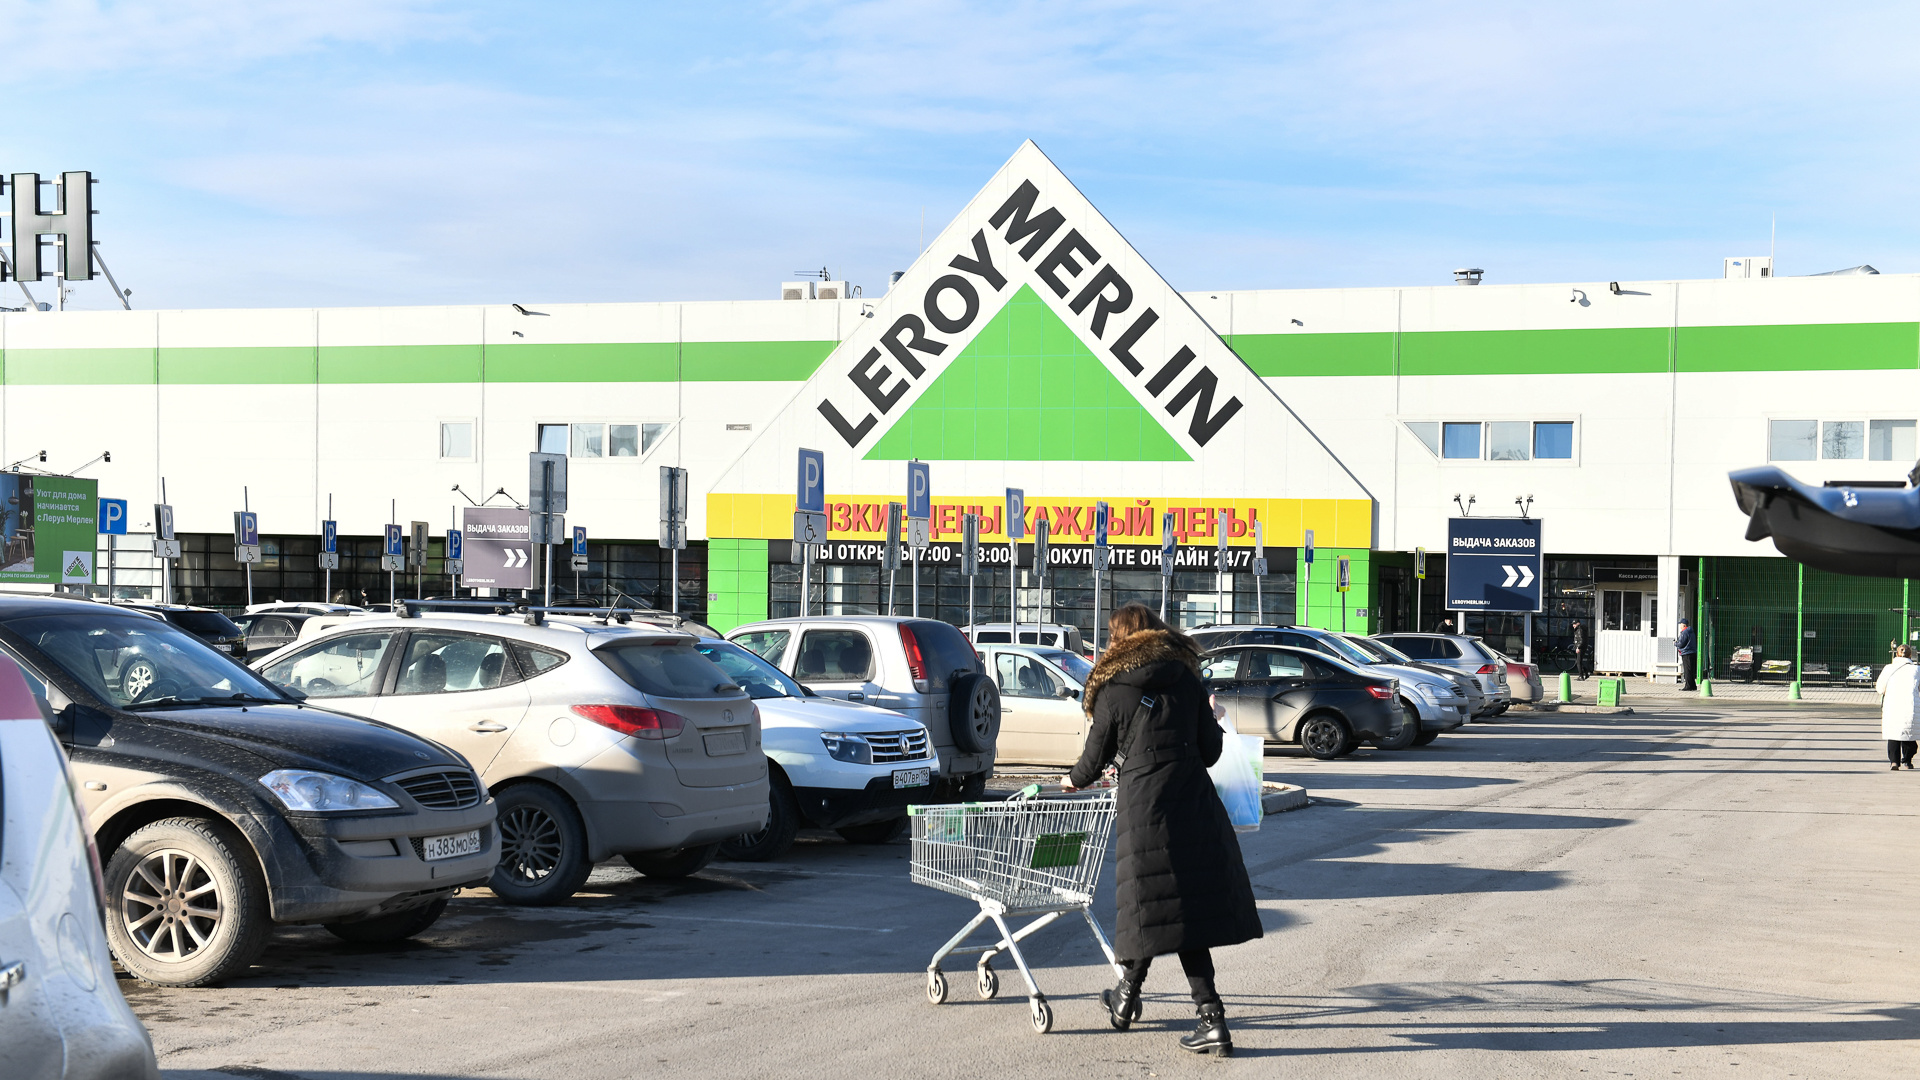 Leroy Merlin передает управление российским бизнесом. Что будет с магазинами?